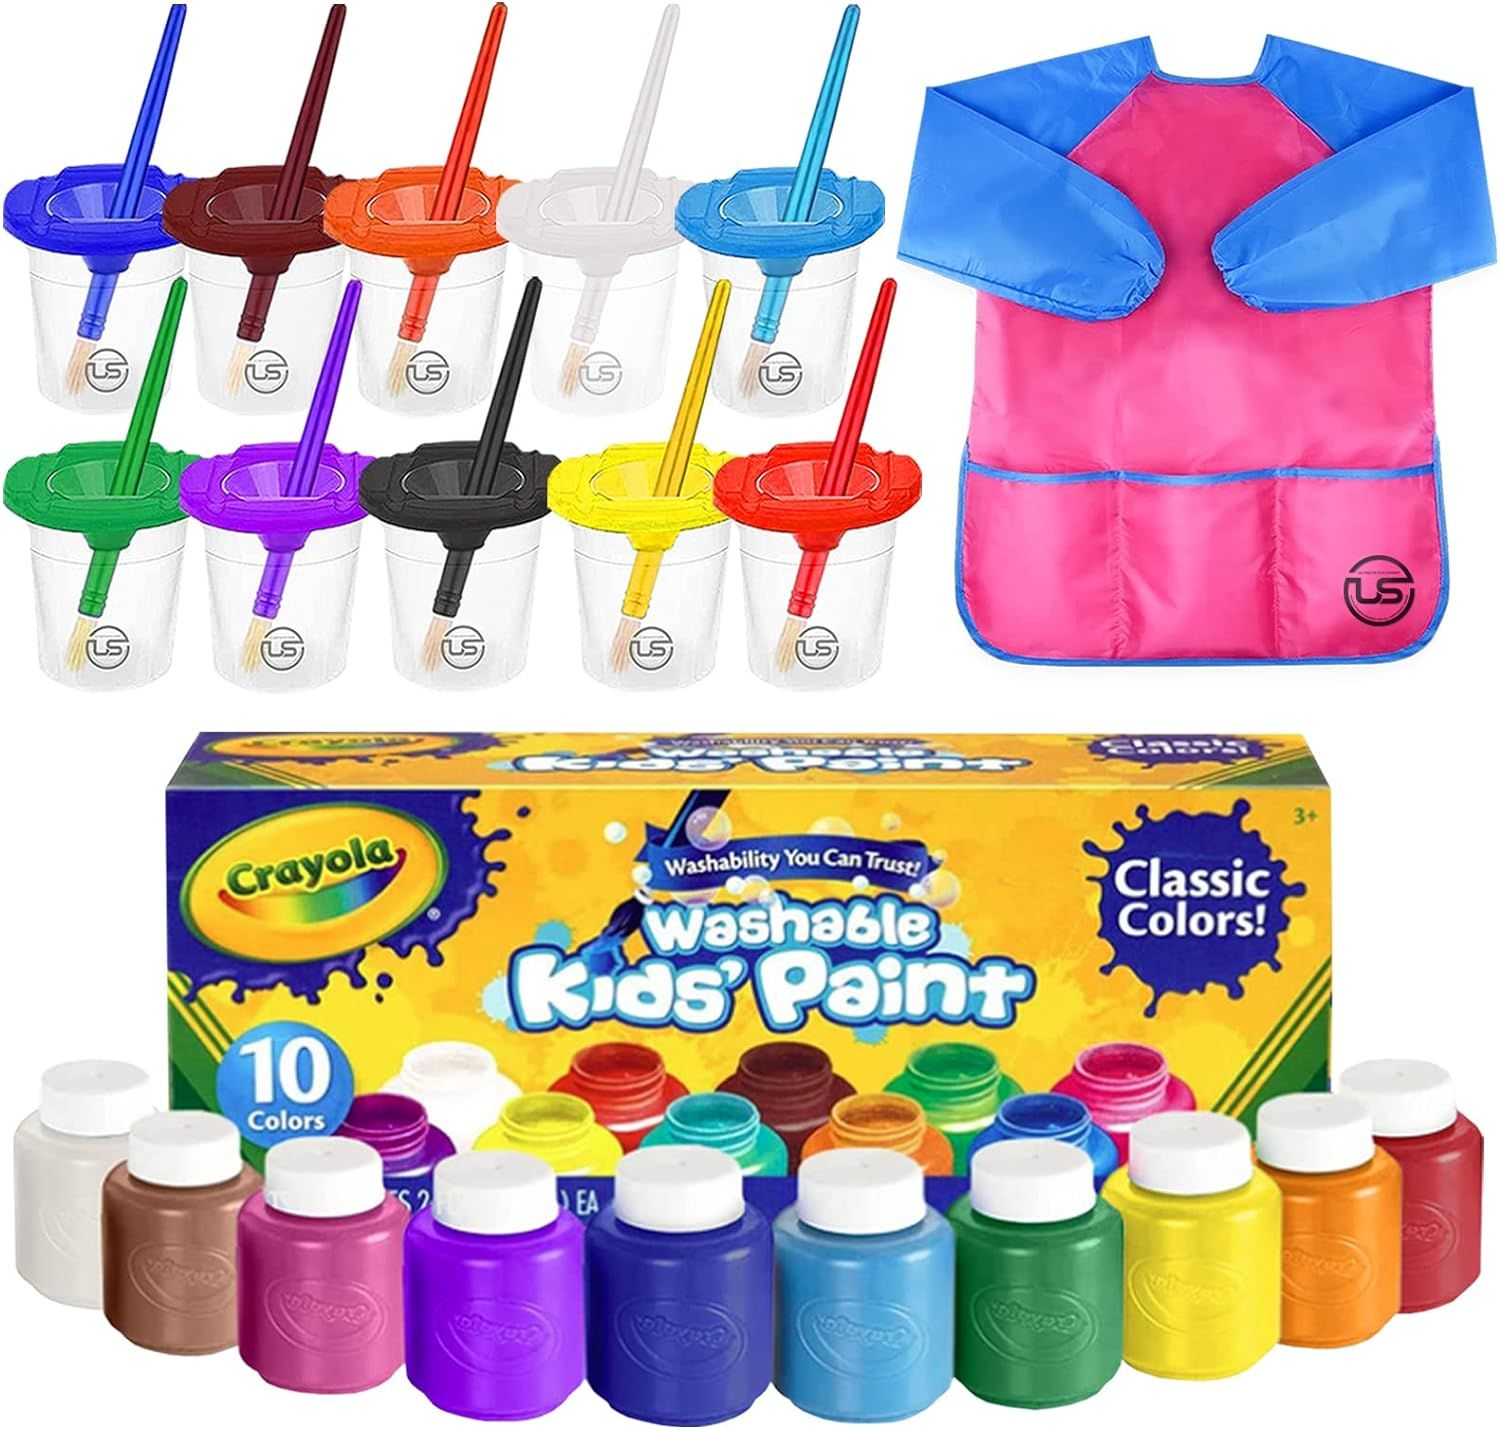 Washable Kids Paint 10 Colors, 10 No Spill Paint Cups For Kids With Lids, 10 Paint Brush Set, Wat... | Amazon (US)